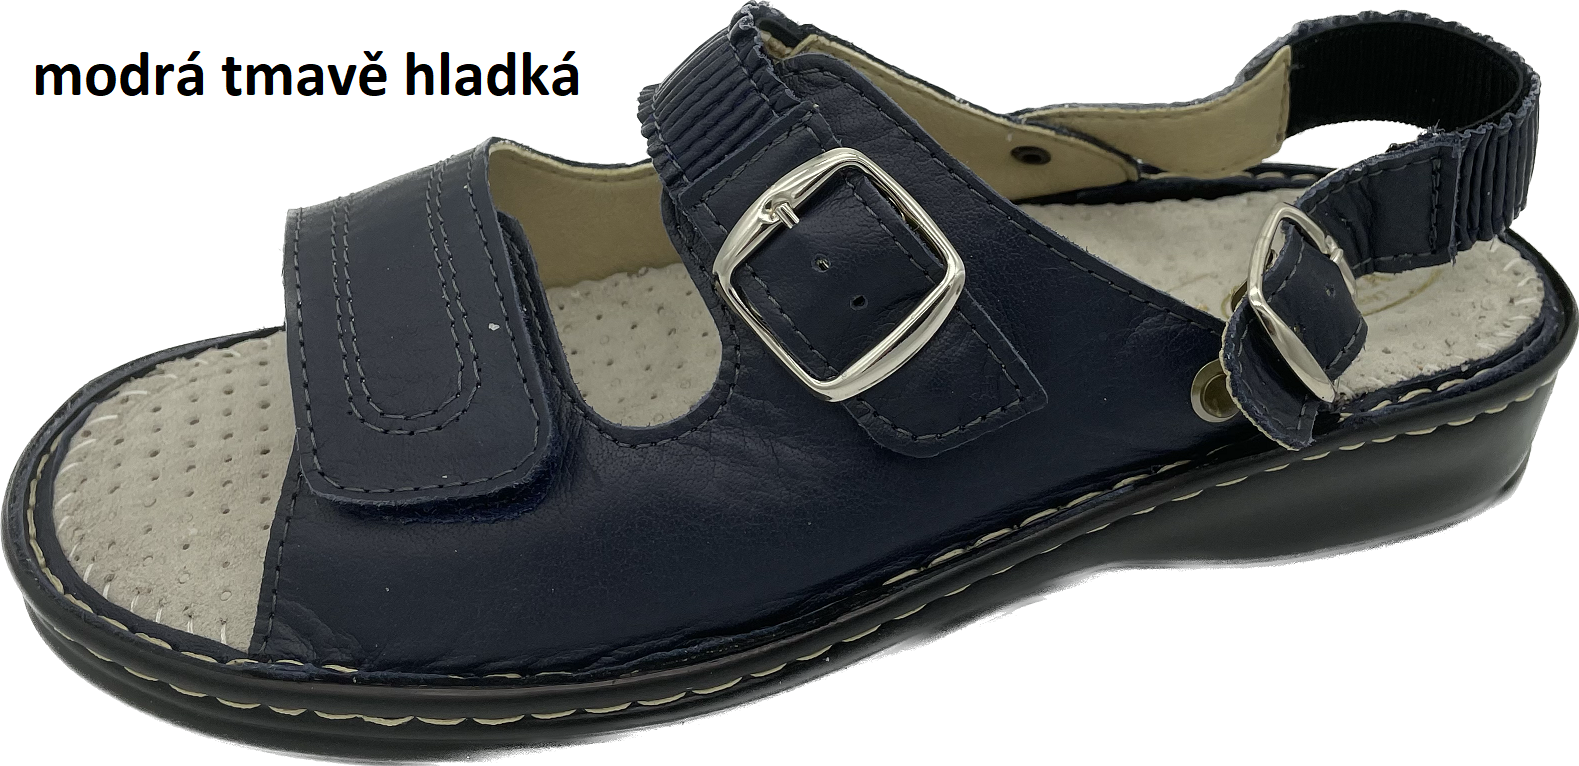 Boty Hanák vzor 305 P - černá podešev Barva usně: modrá tmavě hladká, Velikosti obuvi: 38